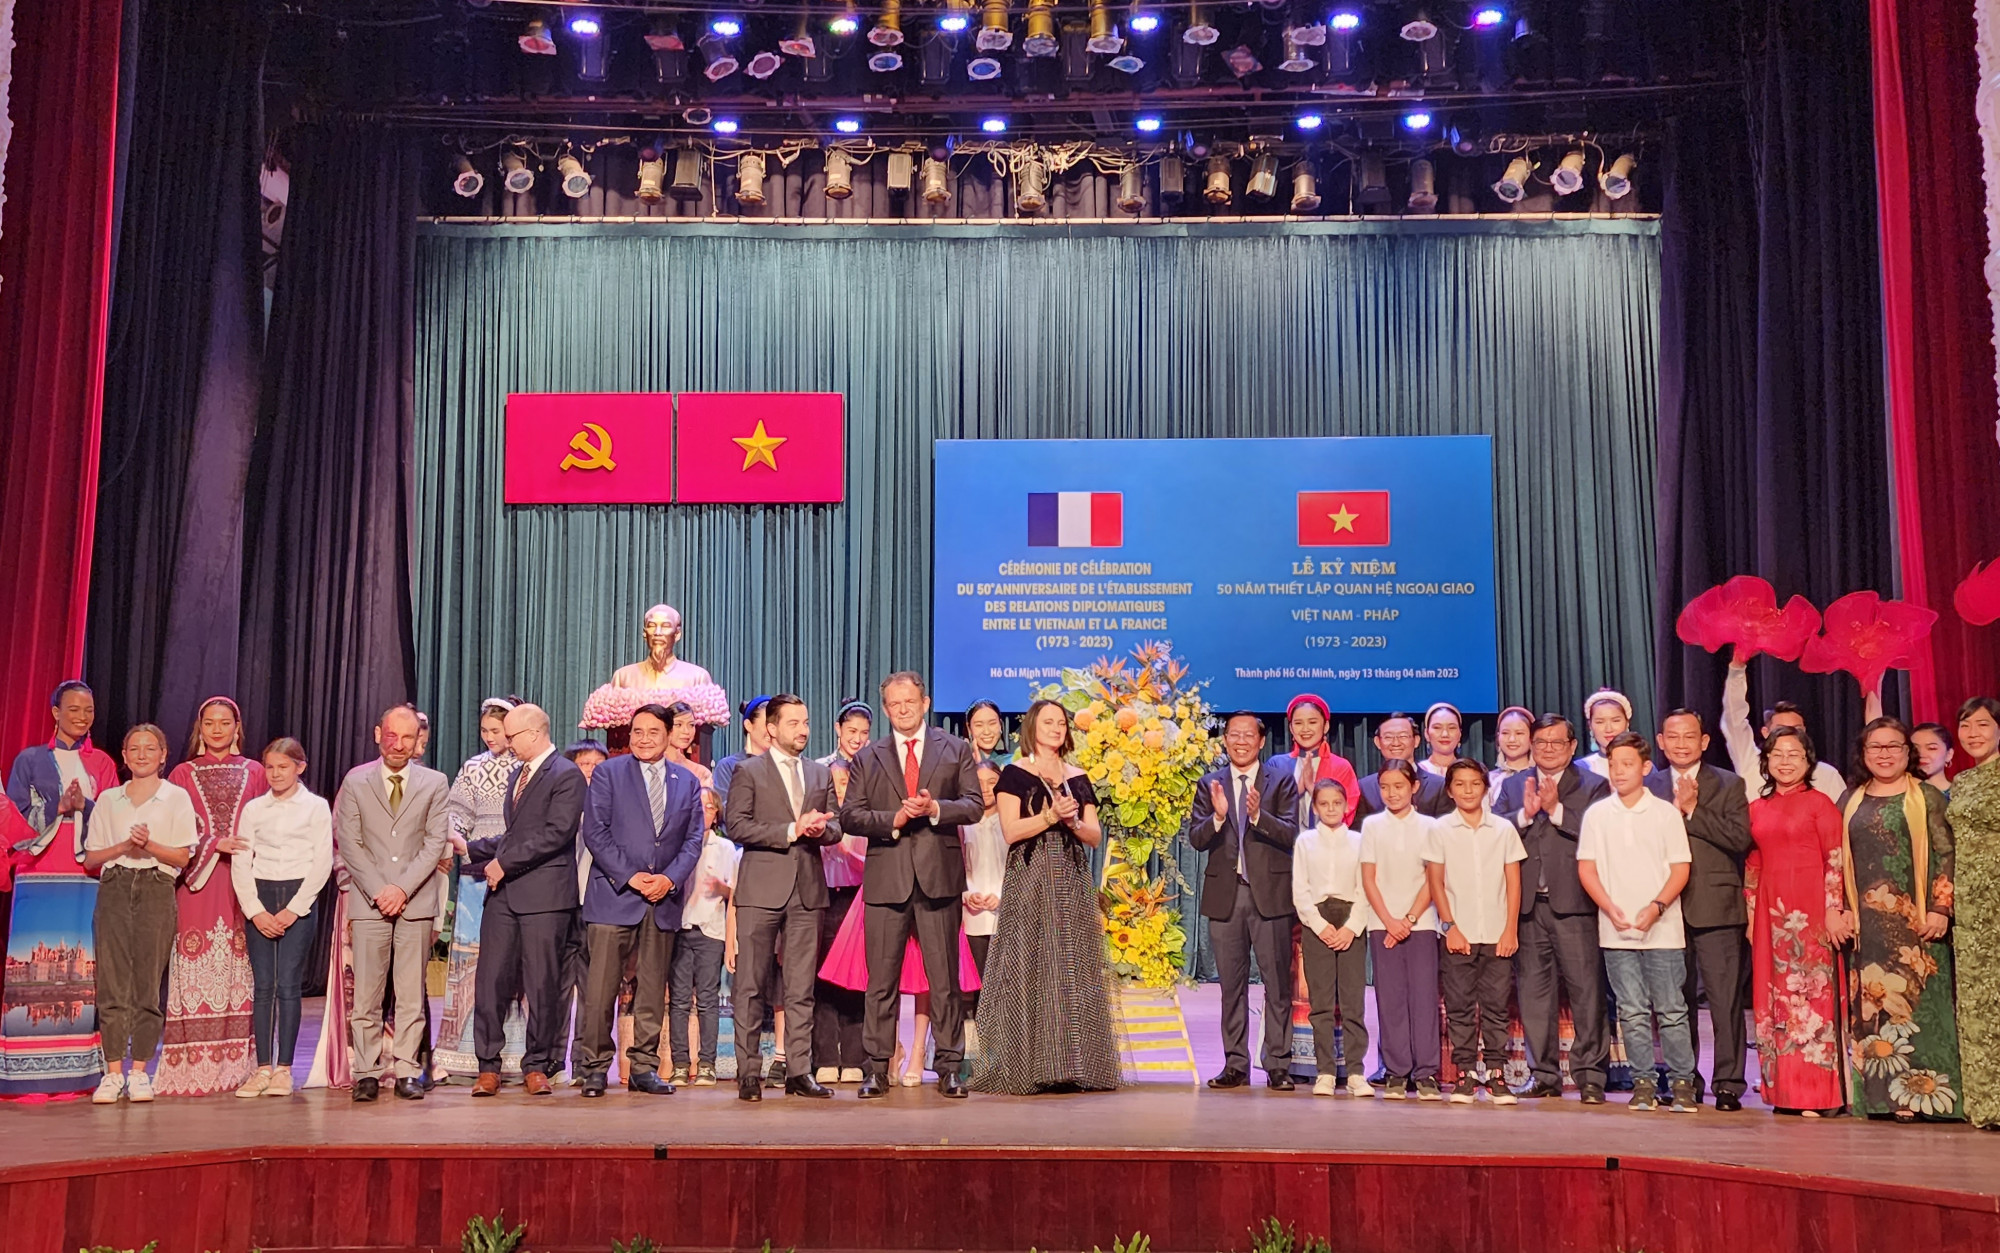 Phái đoàn Tổng Lãnh sự Pháp tại TP HCM cùng các cấp lãnh đạo thành phố  tham dự lễ kỷ niệm 50 năm Ngày thiết lập quan hệ ngoại giao Việt Nam – Pháp (12/4/1973 – 12/4/2023)  tại Nhà hát lớn Thành phố